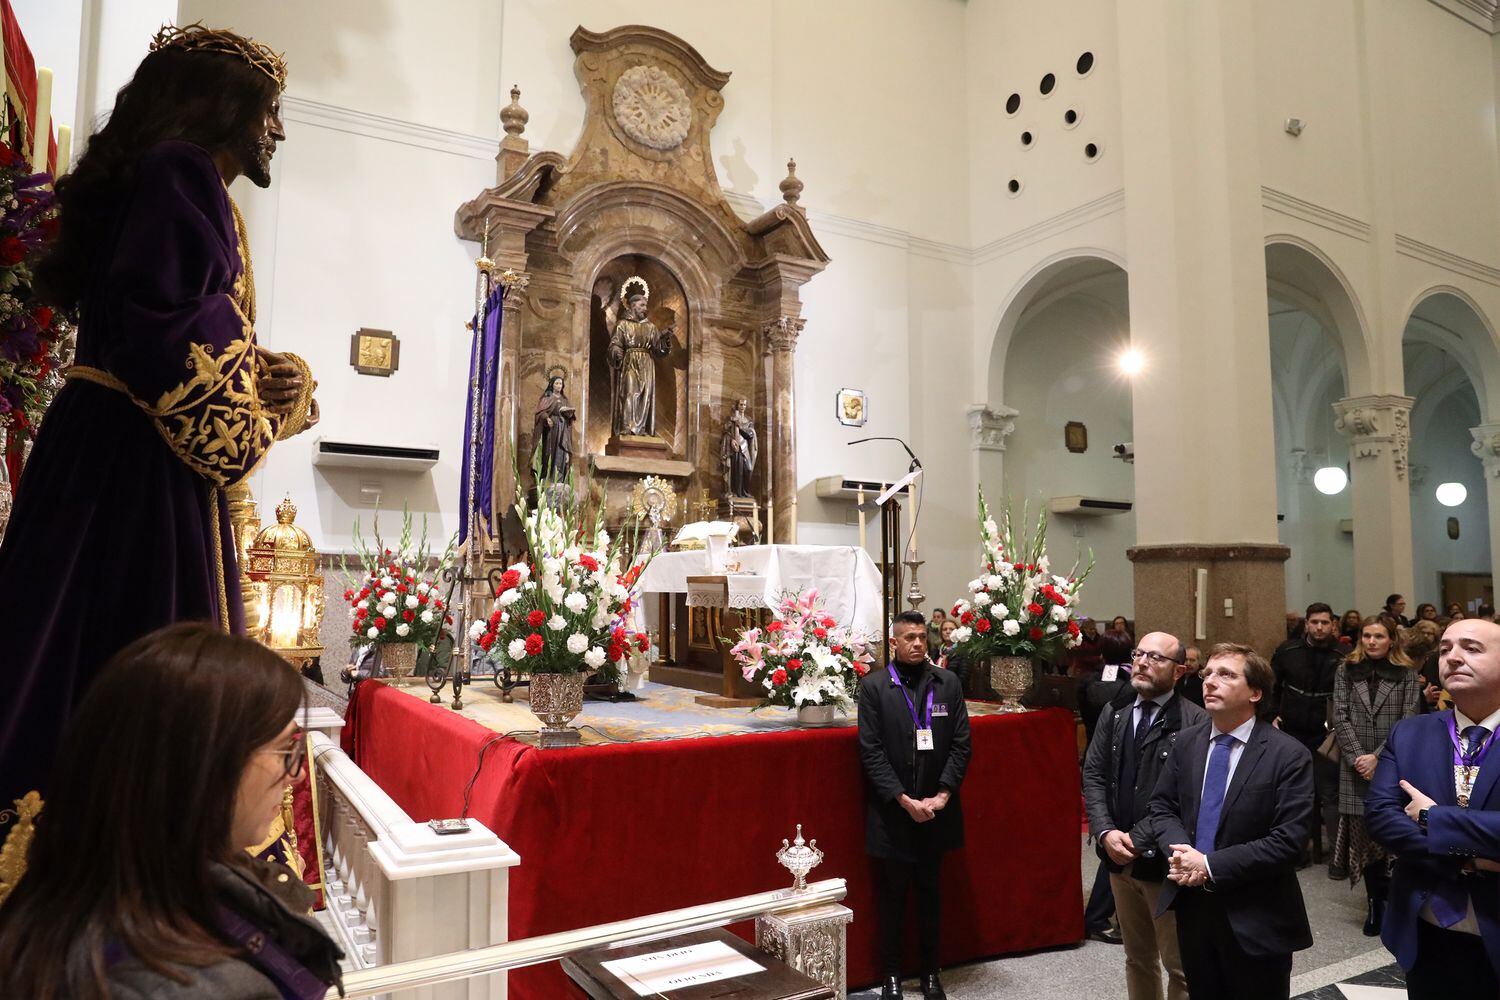 El alcalde de Madrid, José Luis Martínez-Almeida (centro), observa la imagen del Cristo el primer viernes de marzo en la Basílica de Jesús de Medinaceli con motivo de la tradición de venerarle y darle culto, en Madrid.